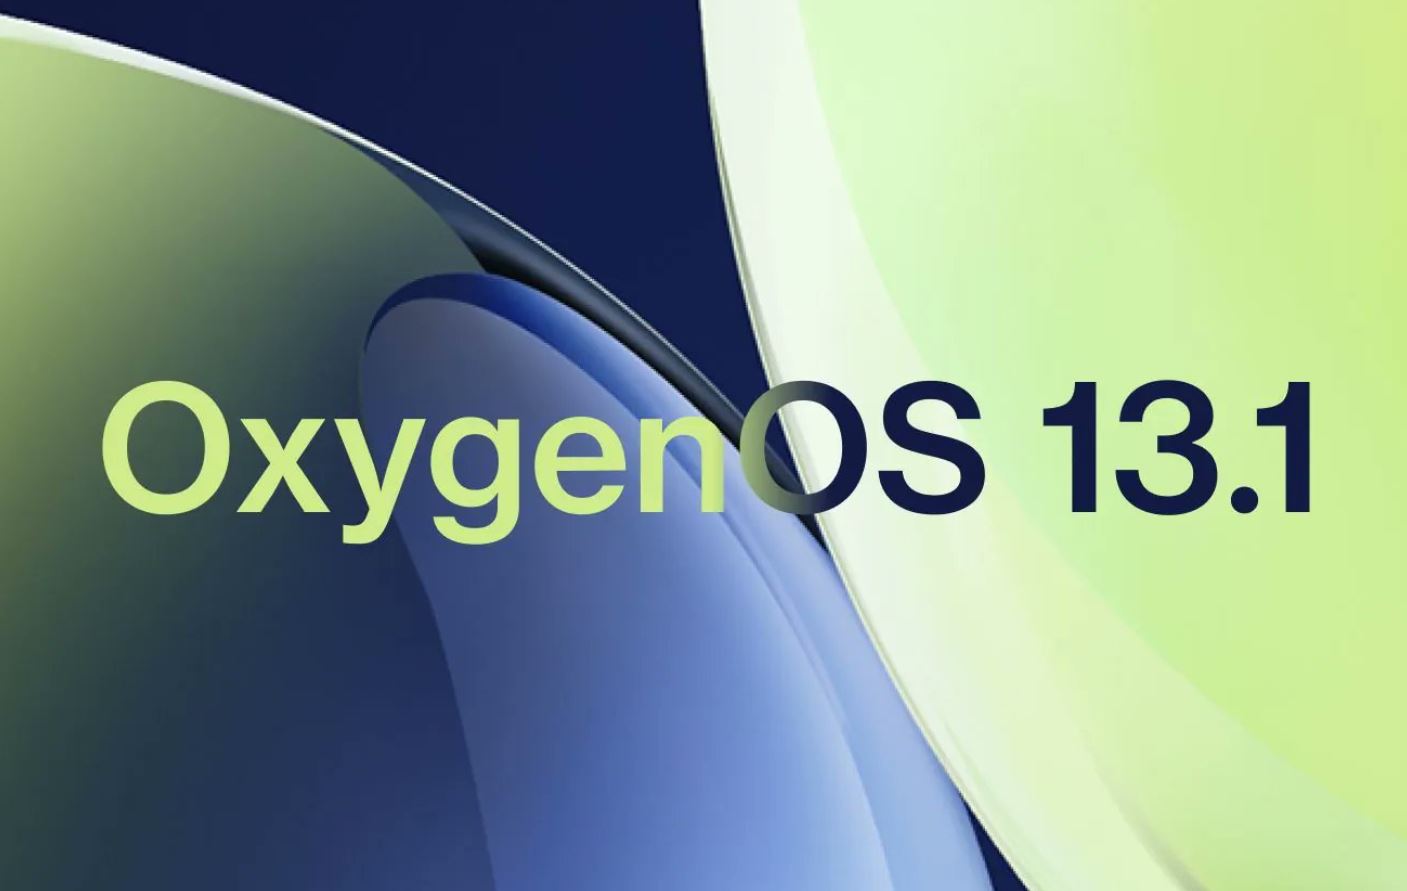 oxygen os 13.1 logo